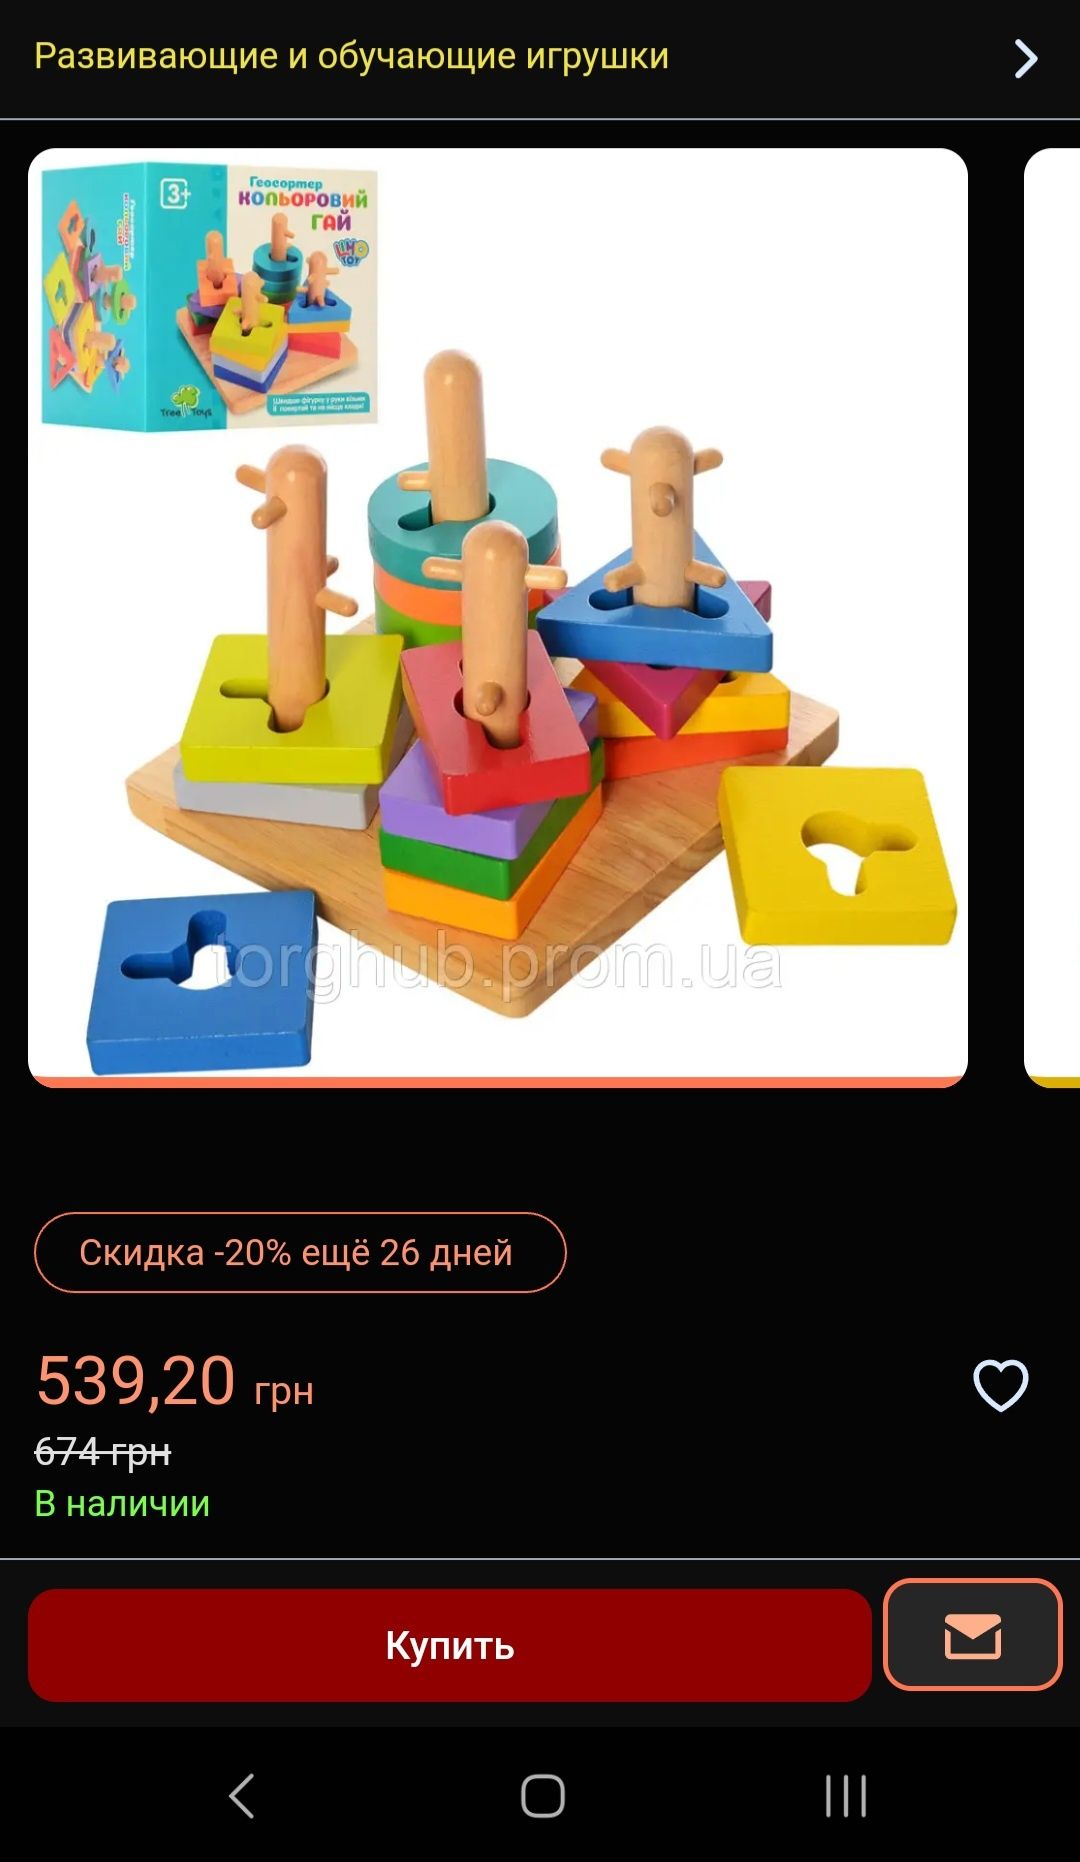 Деревянная игрушка Геометрика Limo Toy пирамидка-ключ, 16 фигур